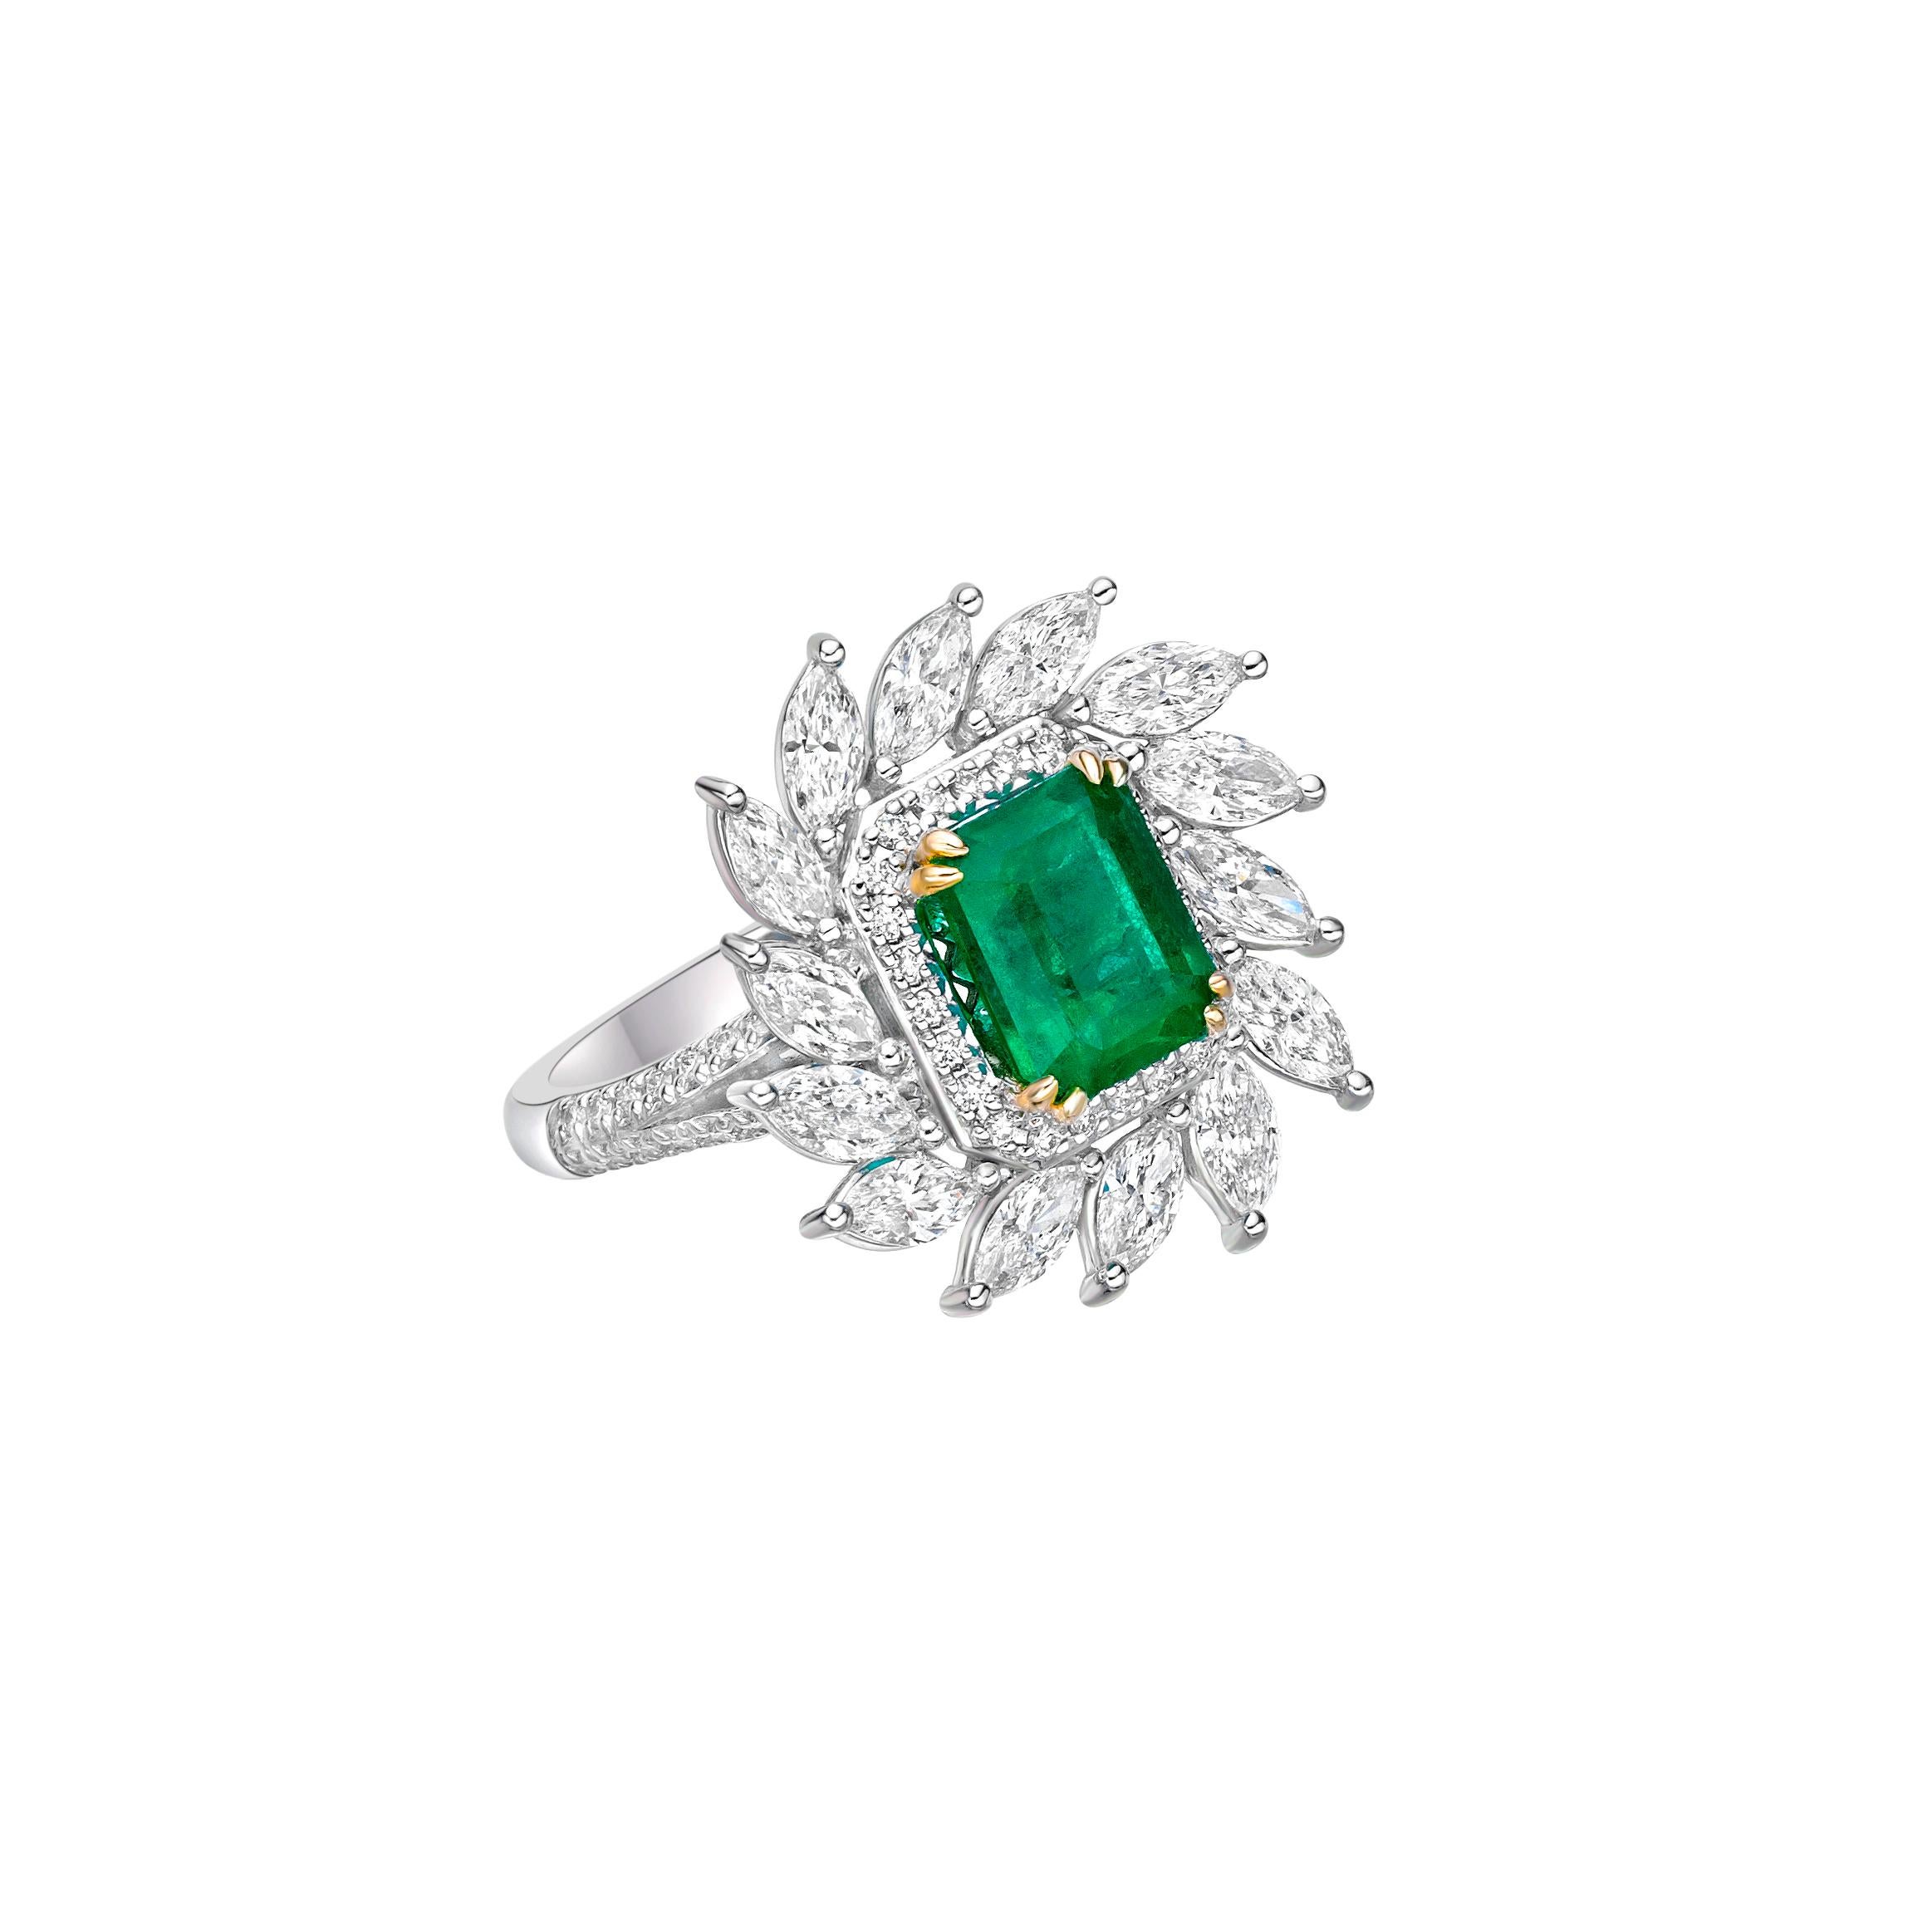 Sunflower Emeralds von Sunita Nahata Fine Design. Diese Kollektion zeigt brillante grüne Smaragde auf einem Bett aus wunderschönen weißen Diamanten, die in weißes Gelbgold gefasst sind. Dies ist ein kleiner und zarter Brautring, der dennoch Glamour